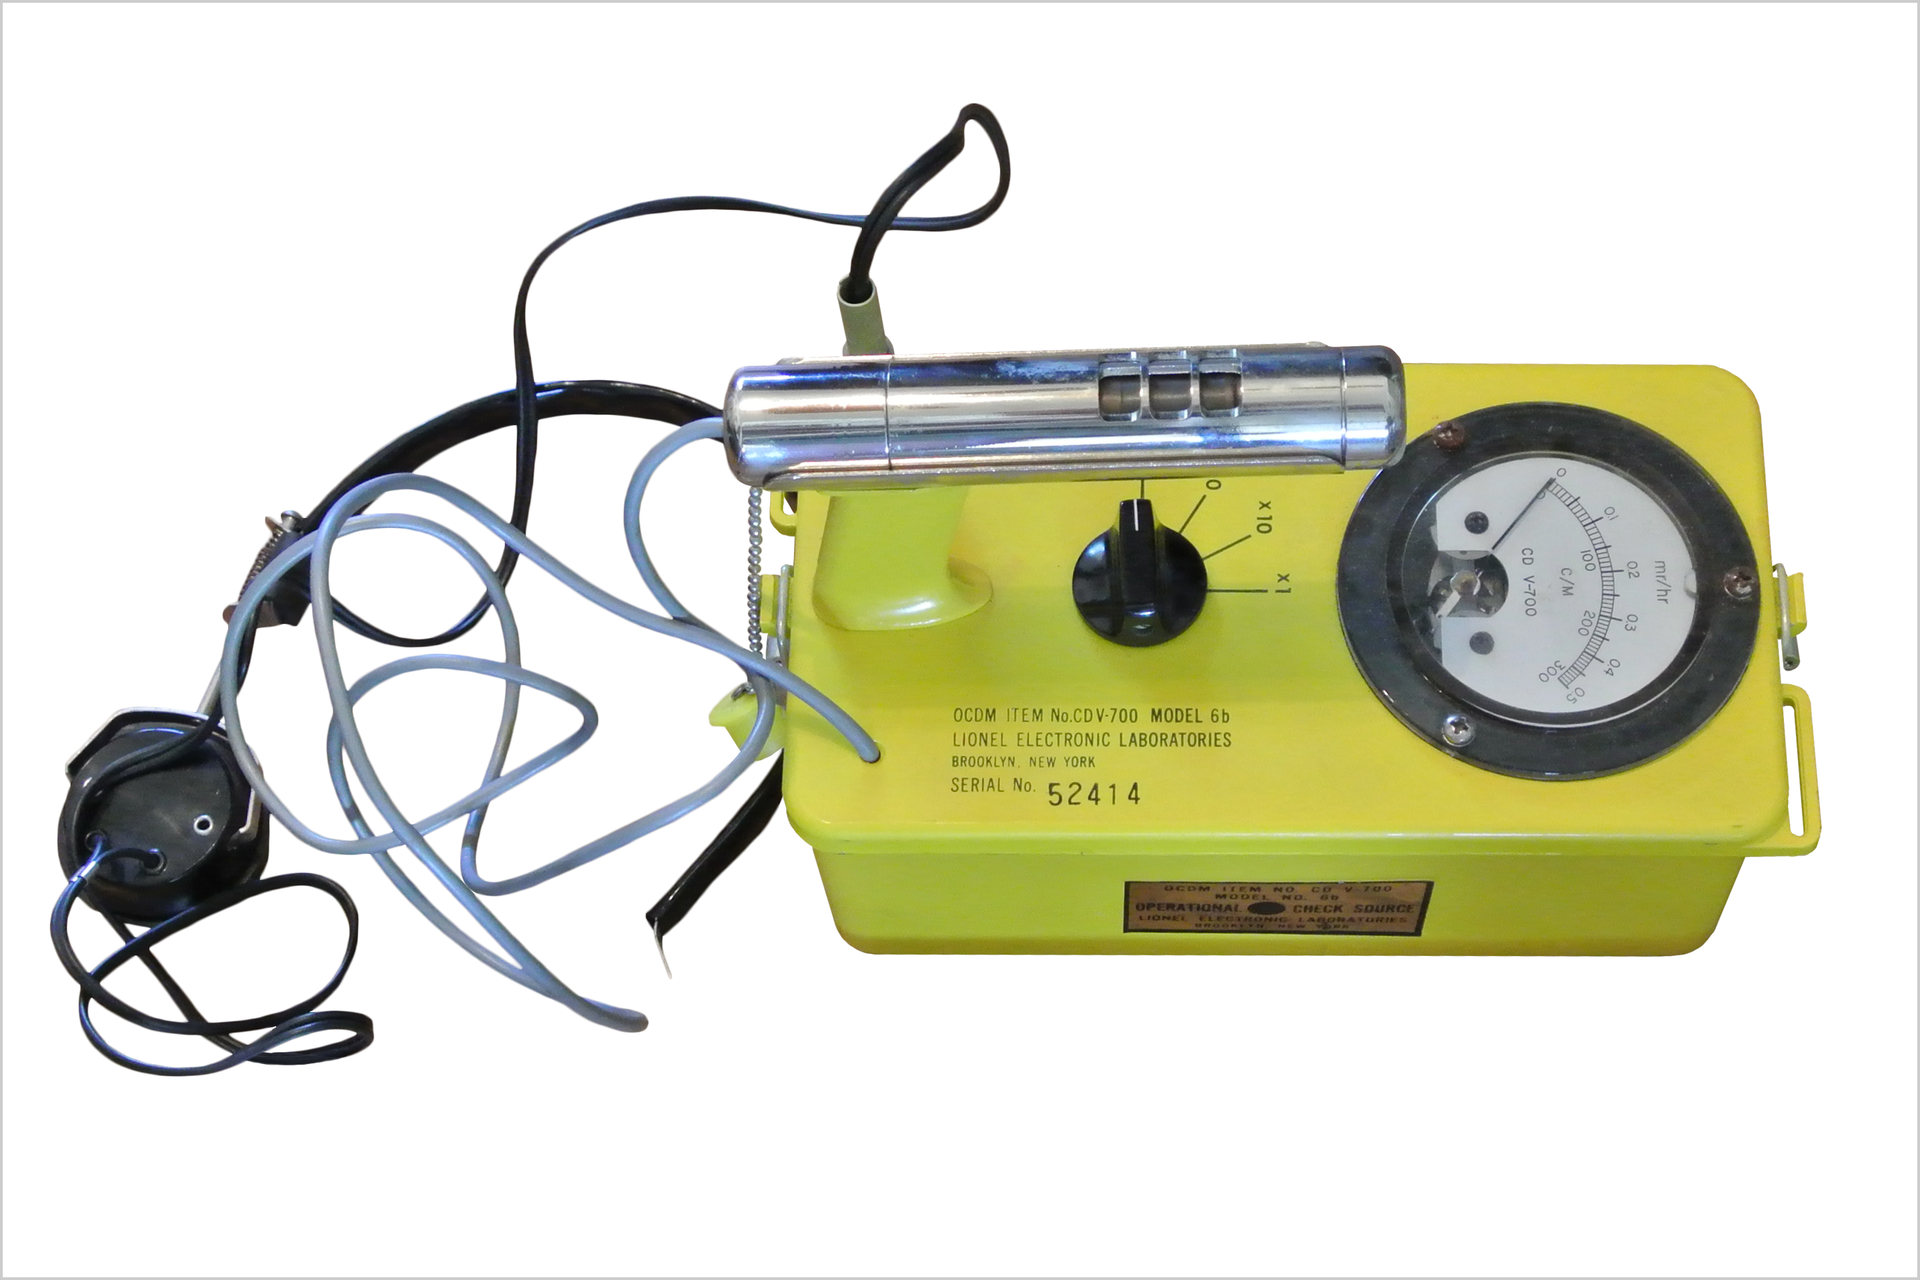 Kolorowe zdjęcie przedstawia licznik Geigera. Zdjęcie wykonane z góry. Po prawej żółte metalowe pudełko. Na górze pudełka znajdują się (od prawej): wskaźnik promieniowania jądrowego ze skalą liczbową, czarne plastikowe pokrętło na środku, po lewej detektor w kształcie rurki. Po lewej stronie zdjęcia kilka kabli i przewodów. Jeden przewód podłączony jest do obudowy drugi do detektora w kształcie rurki.